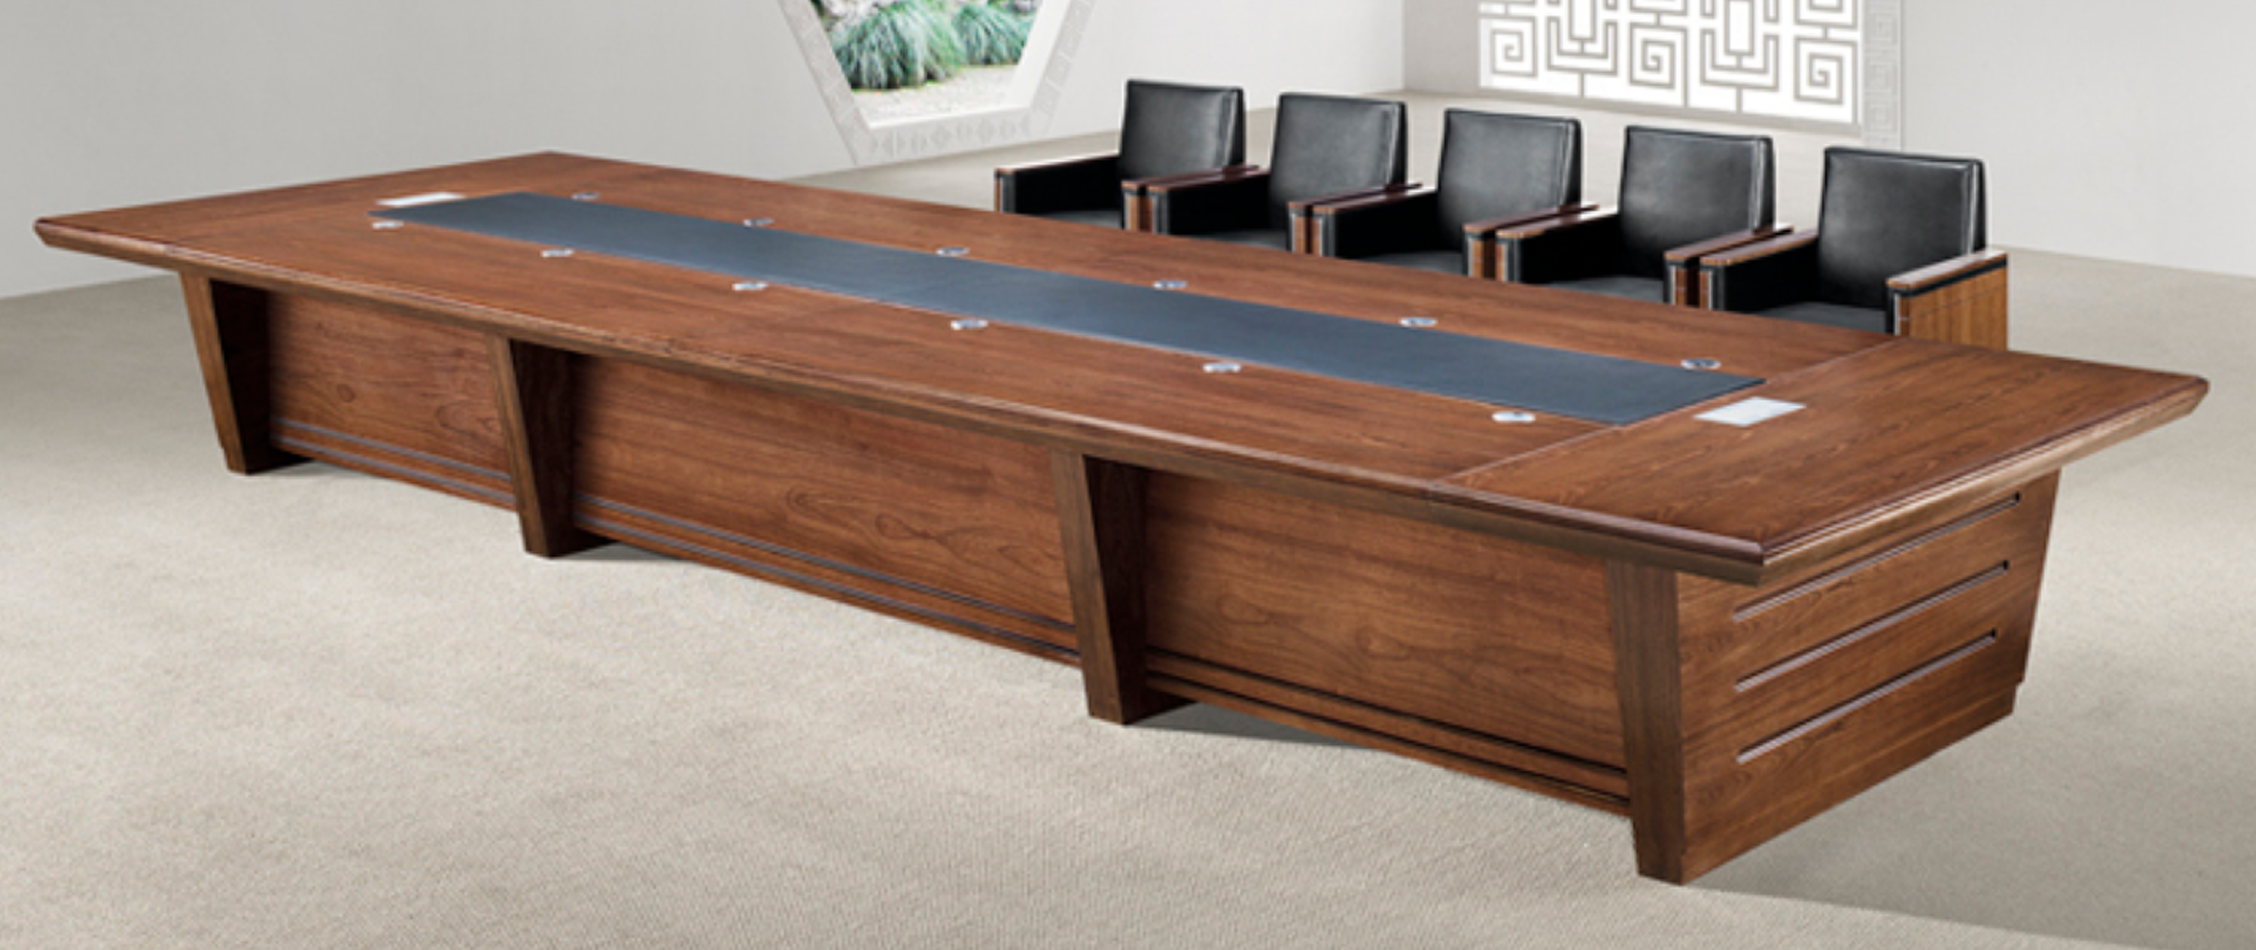 Heavy Duty Executive Boardroom Table - 4800mm / 5000mm / 5200mm / 5400mm / 5600mm / 5800mm / 6000mm - KT5C48 Huddersfield